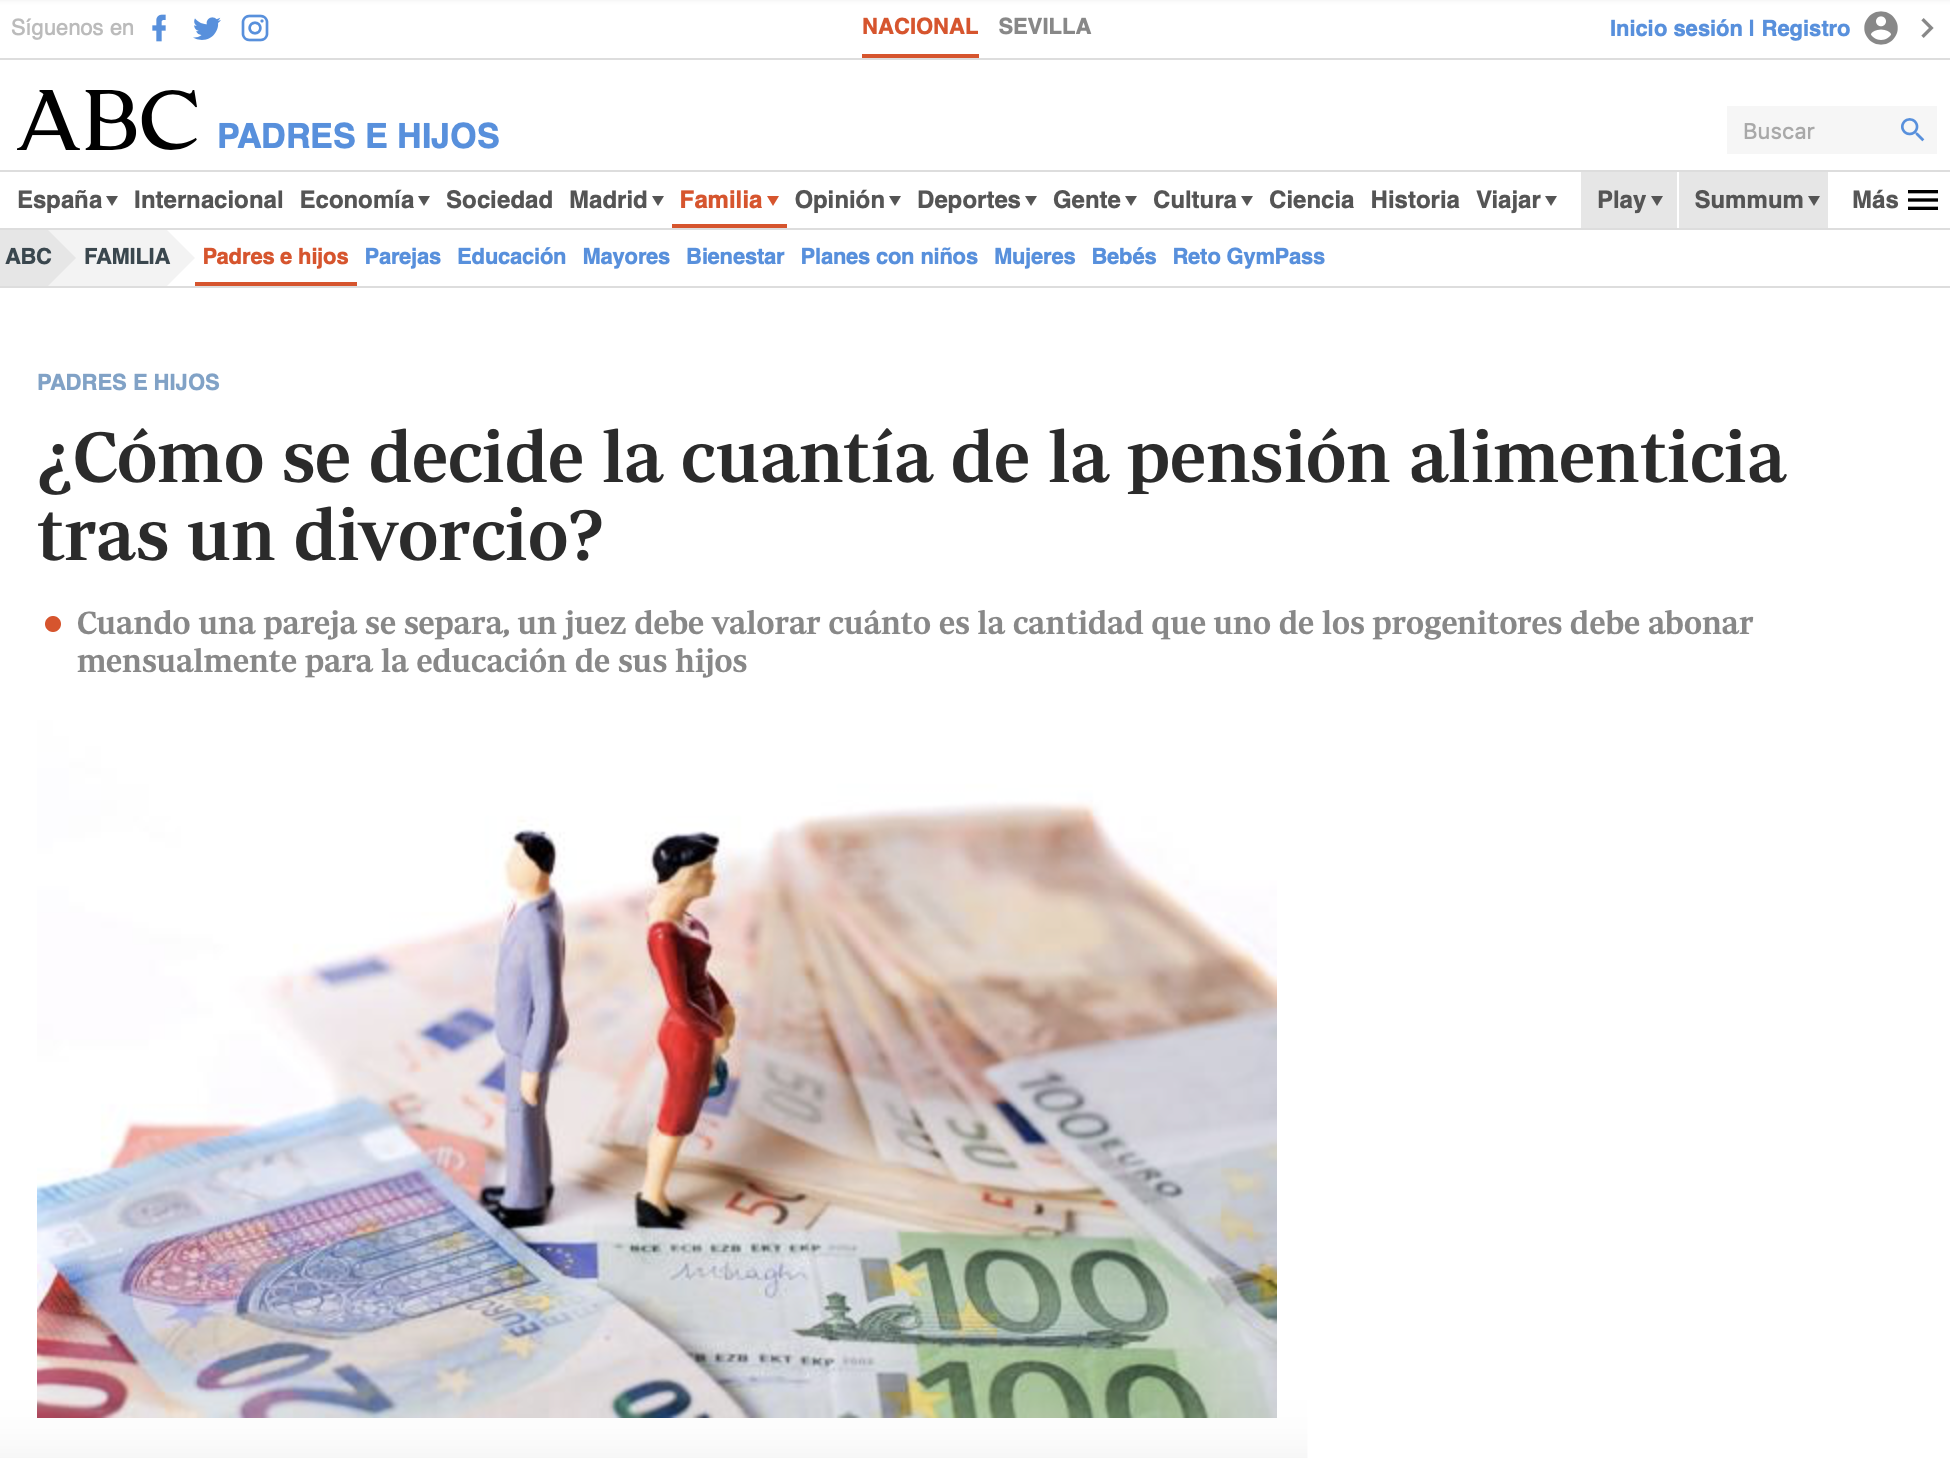 Entrevista a Elena Crespo en ABC sobre cómo se decide la cuantía de la pensión alimenticia